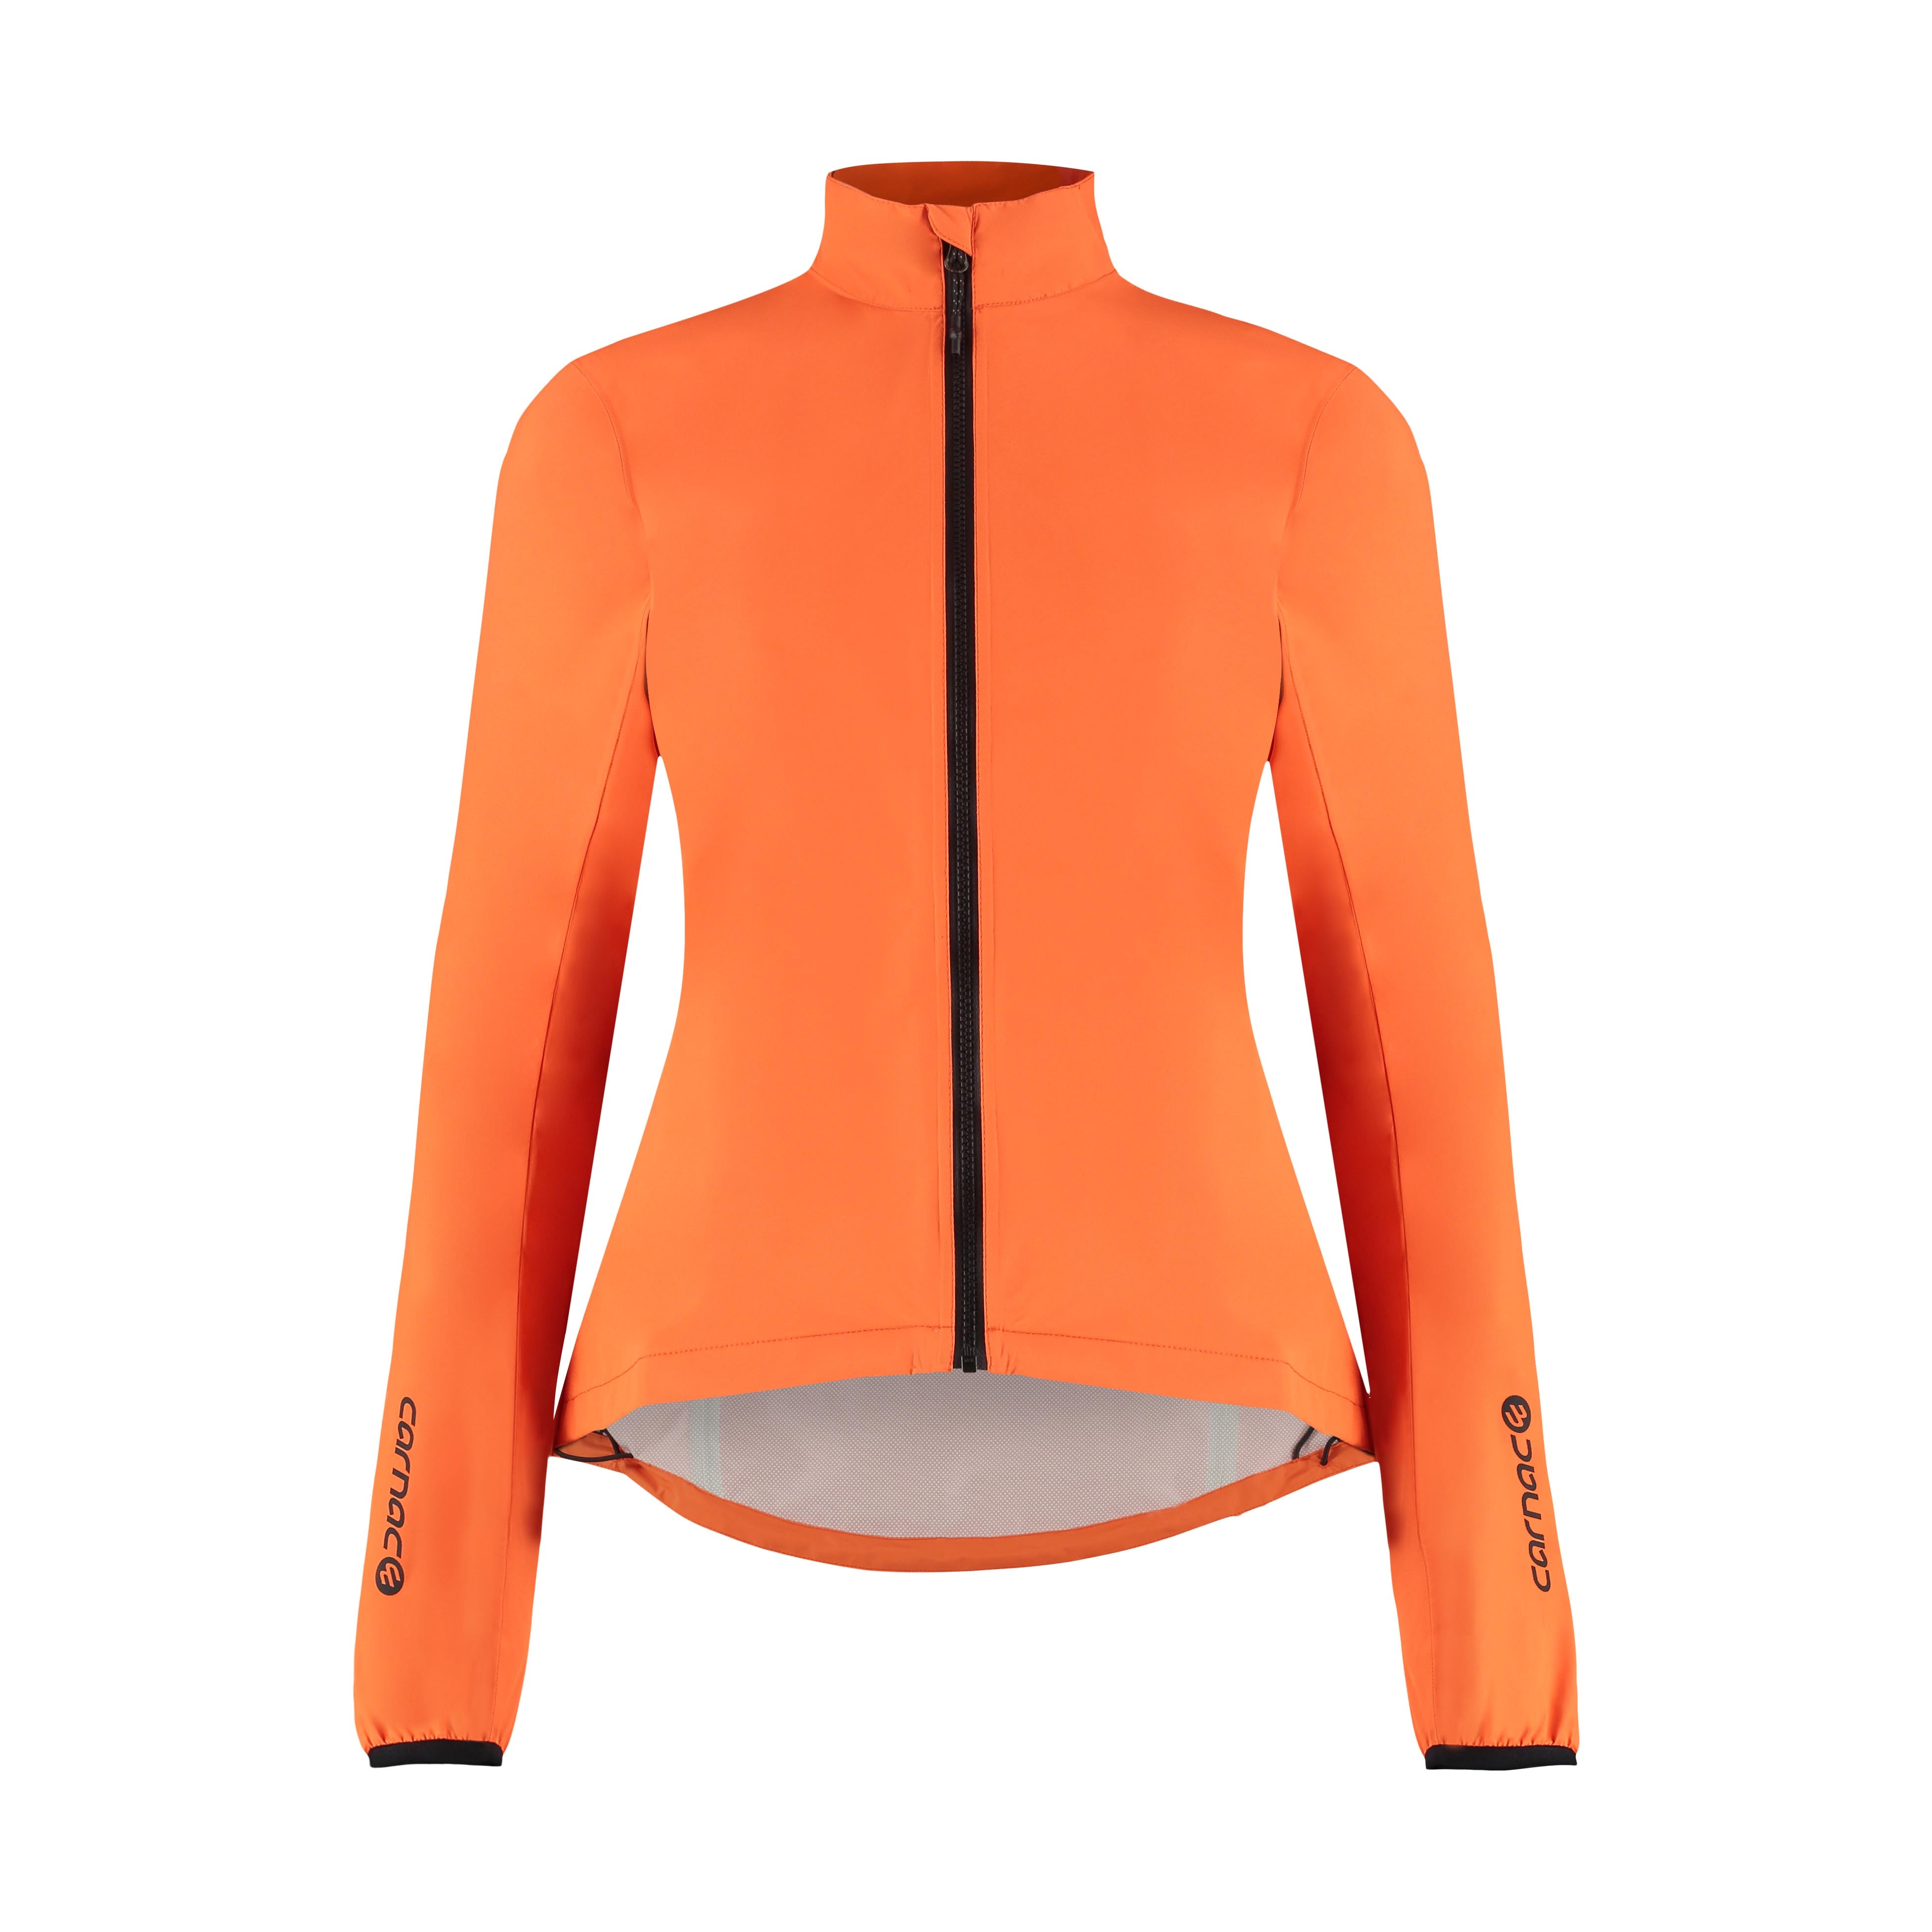 Carnac Women's Orange Waterproof Cycling Rain Jacket